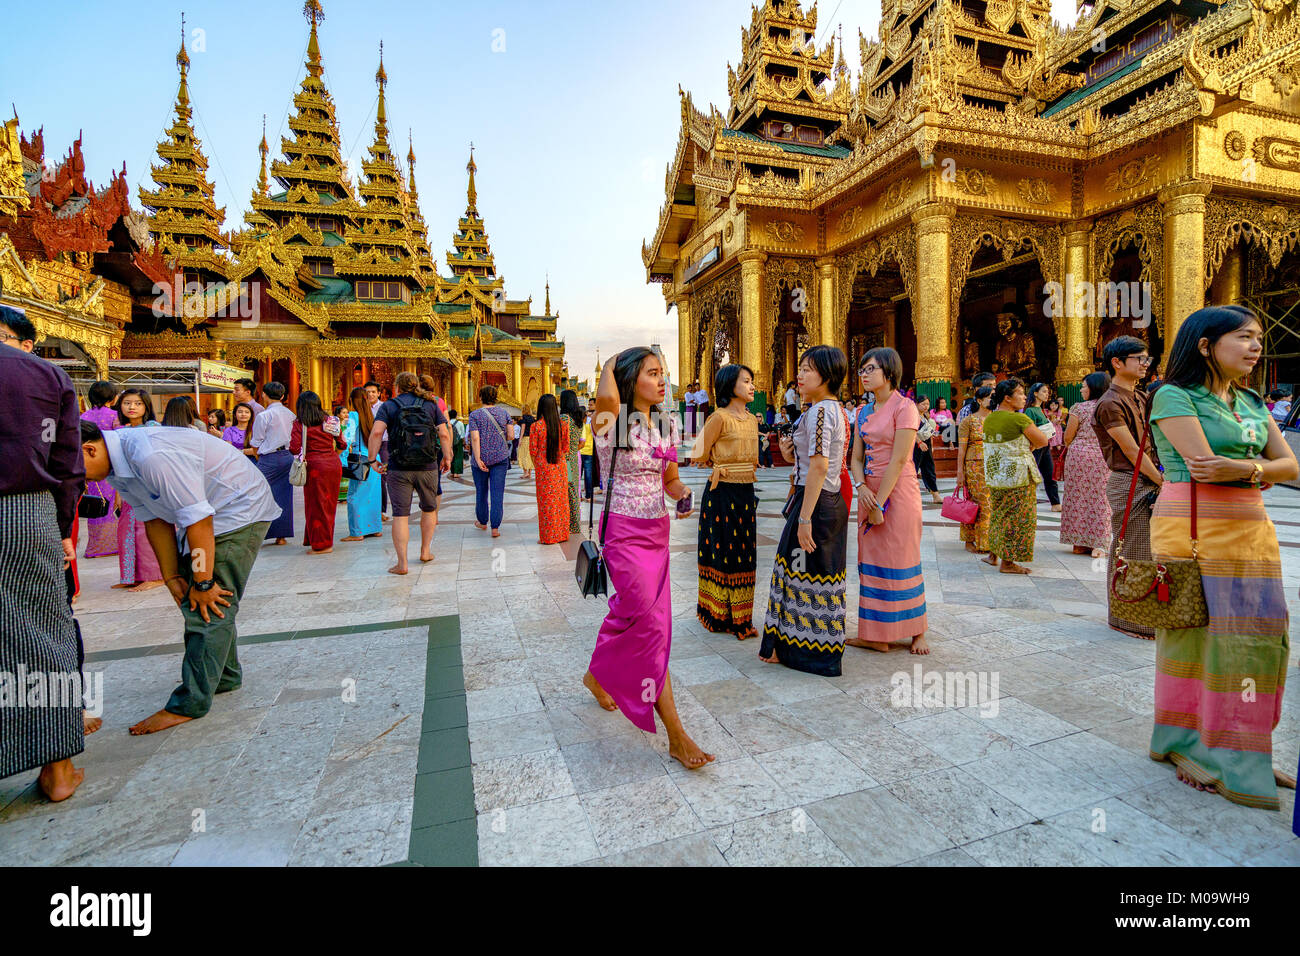 Shwedagon Paya pagoda Myanmer famous sacred place and tourist attraction landmark.Yangon, Myanmar Stock Photo